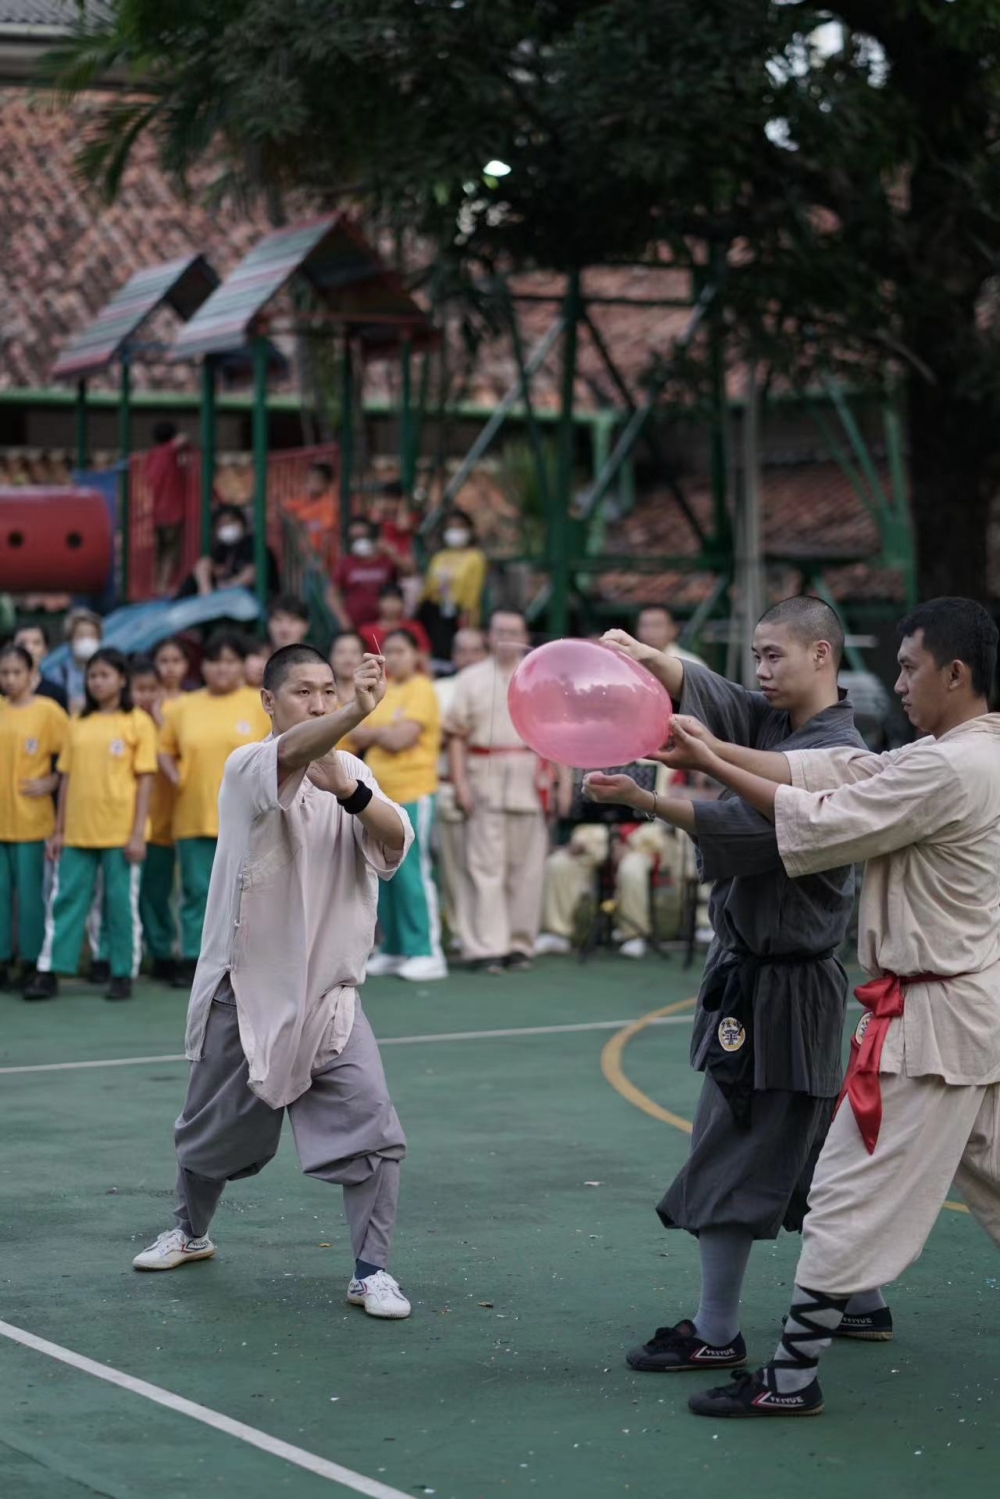 印尼少林修文化中心在圣心孤儿院举办庆祝元宵节活动